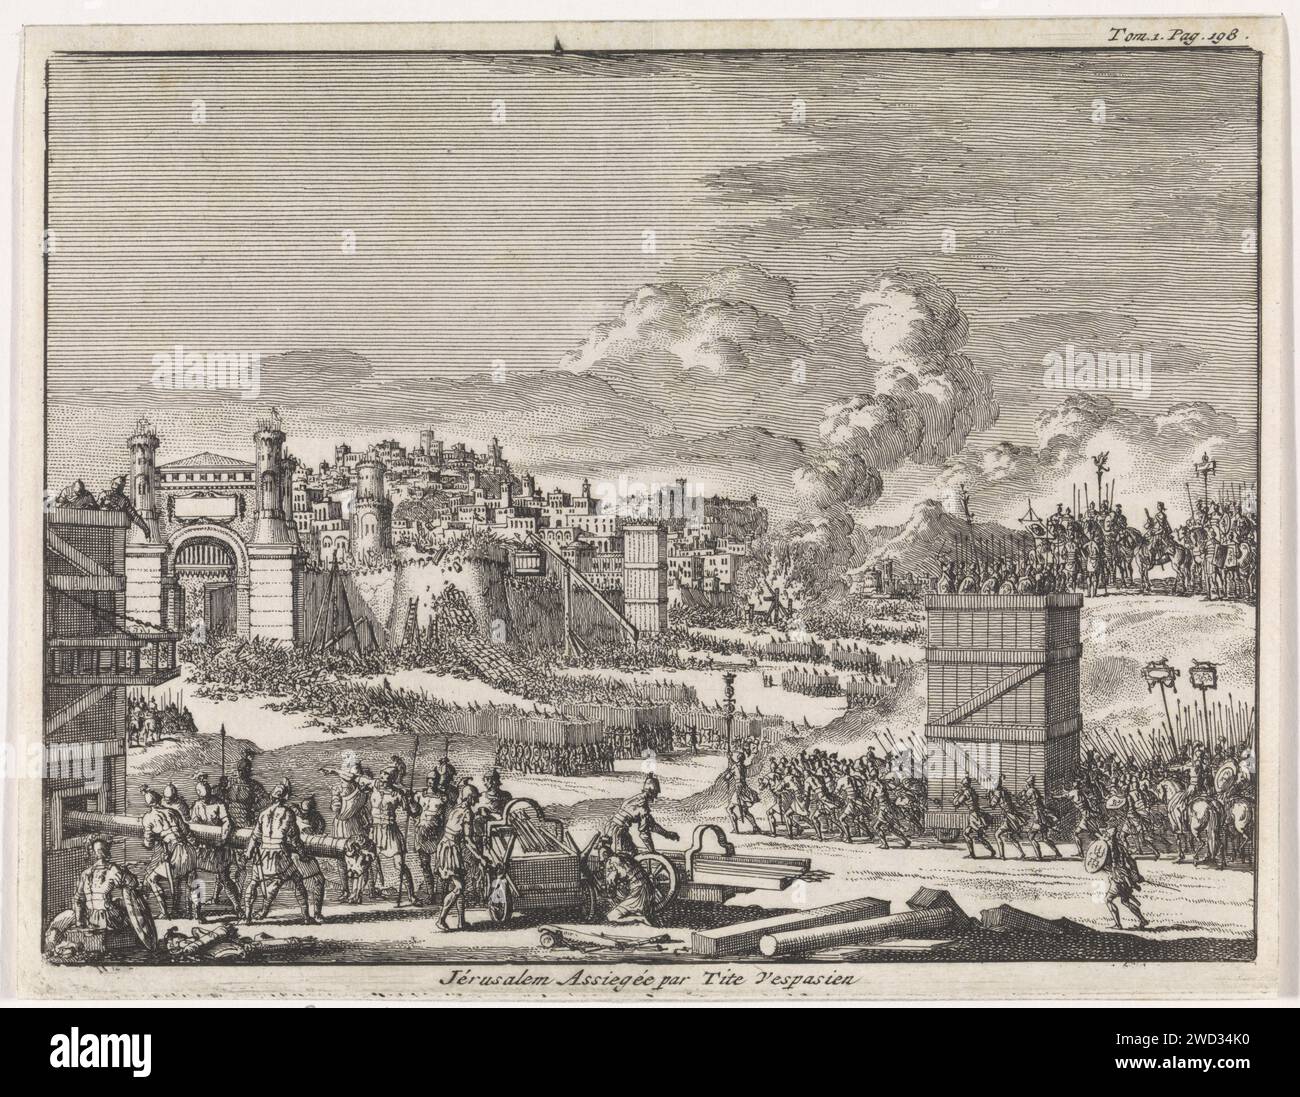 Jerusalem belagert von Titus, Jan Luyken, 1705 Druck Amsterdamer Papiergravur, die in Stadt oder Festung einbricht  Belagerung Jerusalem Stockfoto